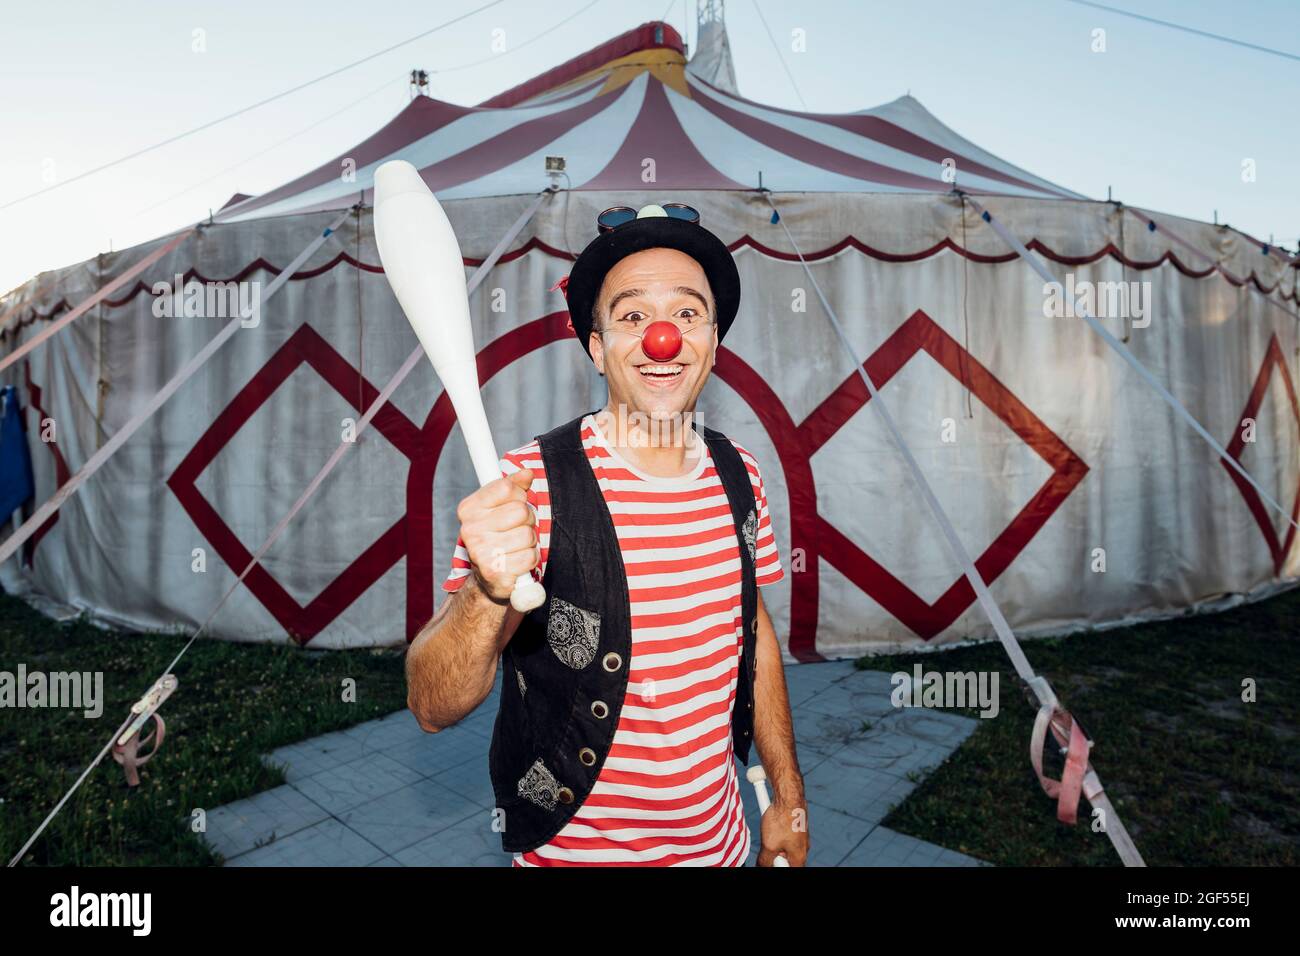 Lächelnder männlicher Clown, der die Jongliernadel hält, während er vor dem Zirkuszelt steht Stockfoto